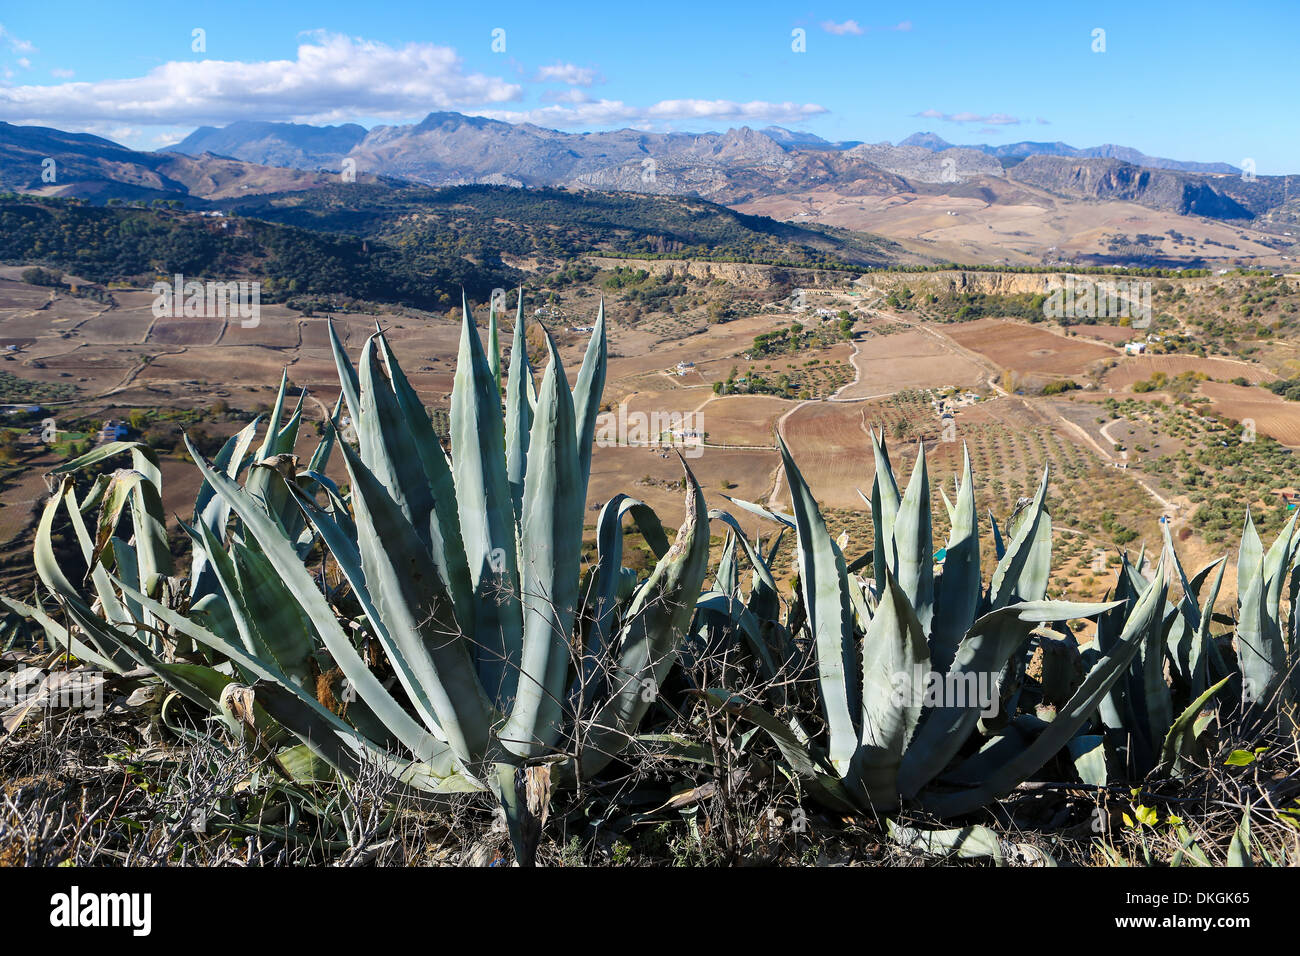 Berg und Kaktus Landschaft in der Nähe von Ronda, Spanien Stockfoto